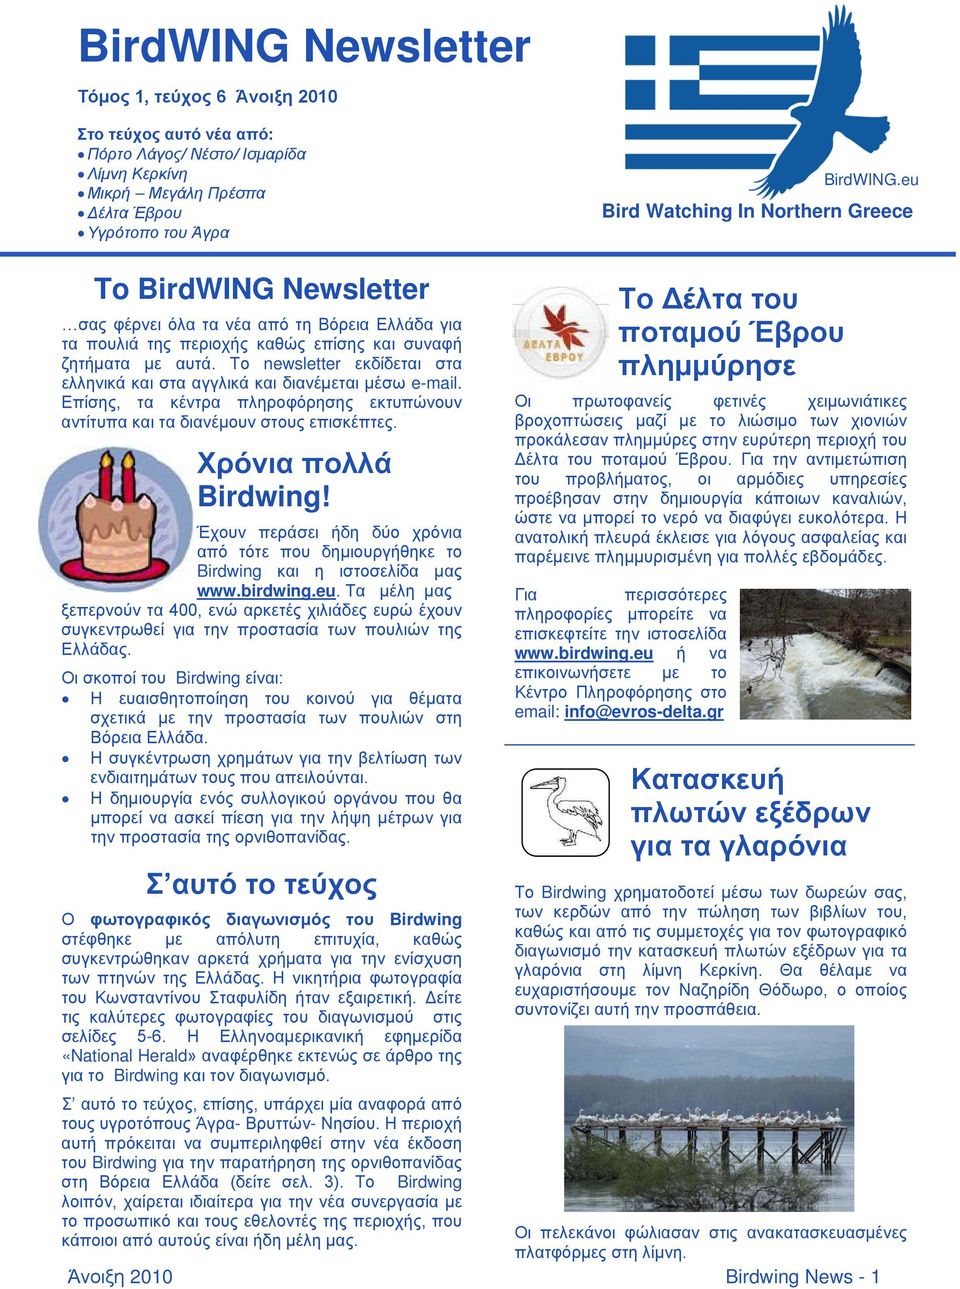 Το newsletter εκδίδεται στα ελληνικά και στα αγγλικά και διανέμεται μέσω e-mail. Επίσης, τα κέντρα πληροφόρησης εκτυπώνουν αντίτυπα και τα διανέμουν στους επισκέπτες. Χρόνια πολλά Birdwing!